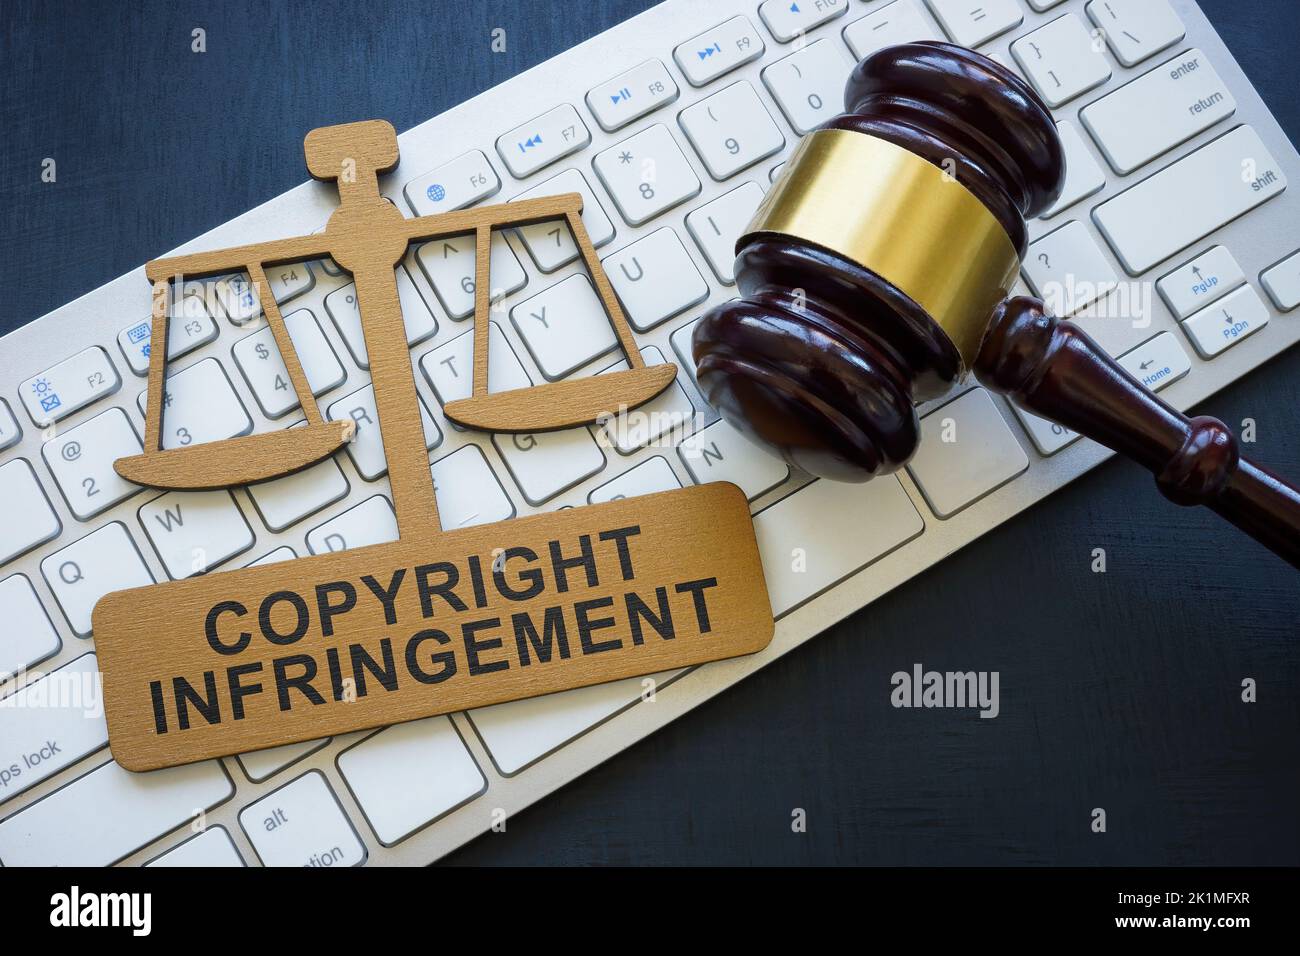 Urheberrechtsverletzung Phrase auf der Platte, Tastatur und gavel. Stockfoto